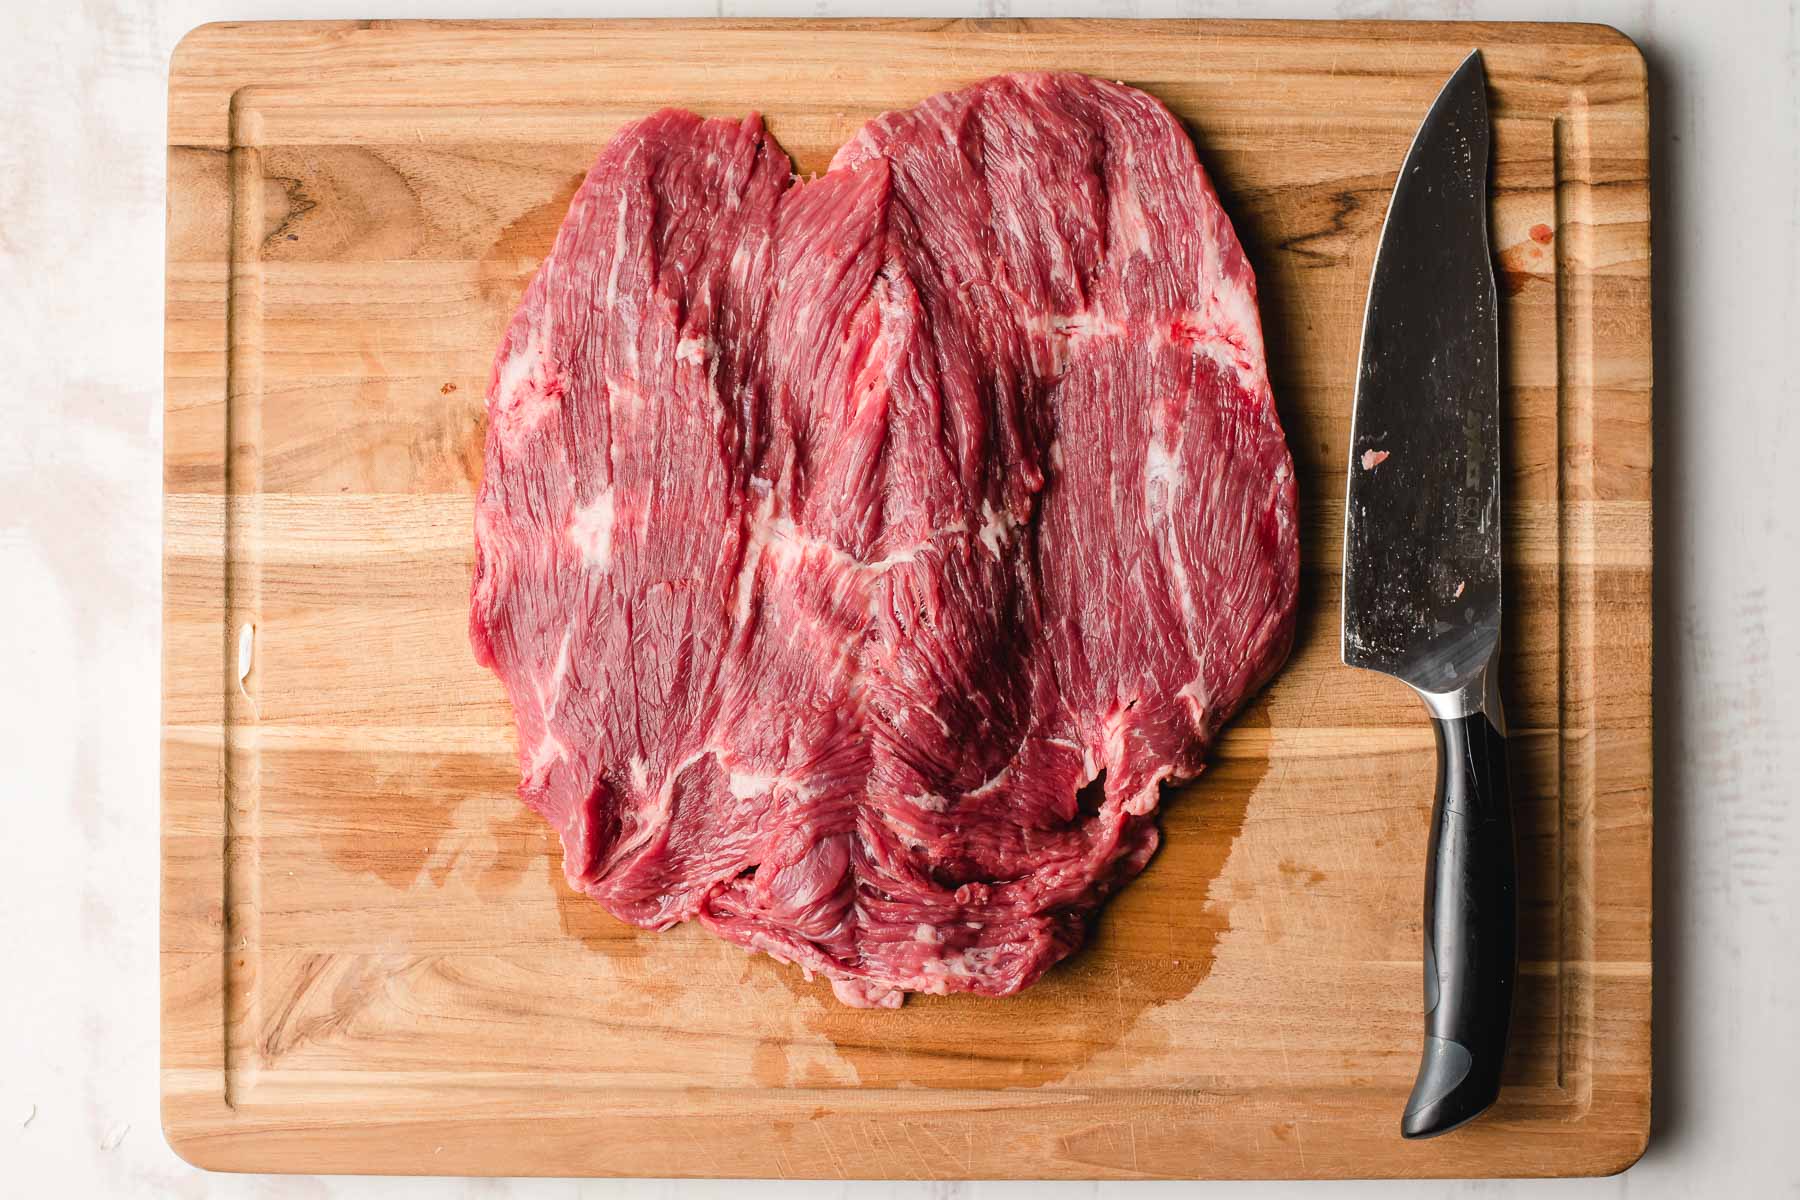 Butterflied flank steak on a cutting board.